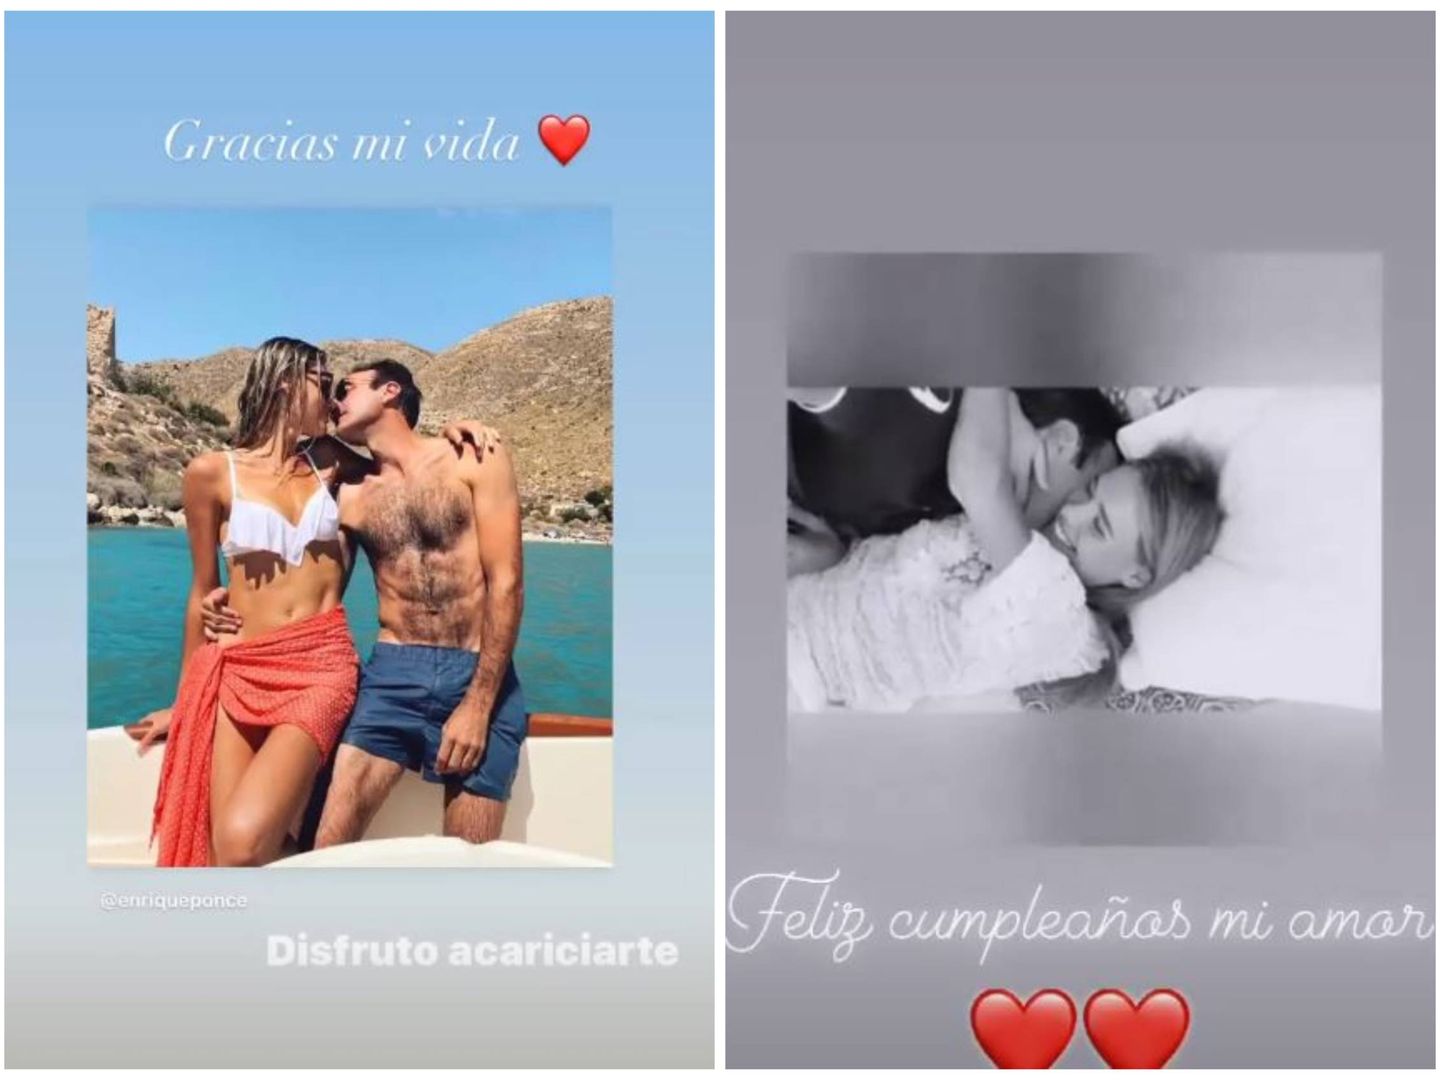 Stories de Ana Soria y Enrique Ponce en Instagram. (Redes sociales)